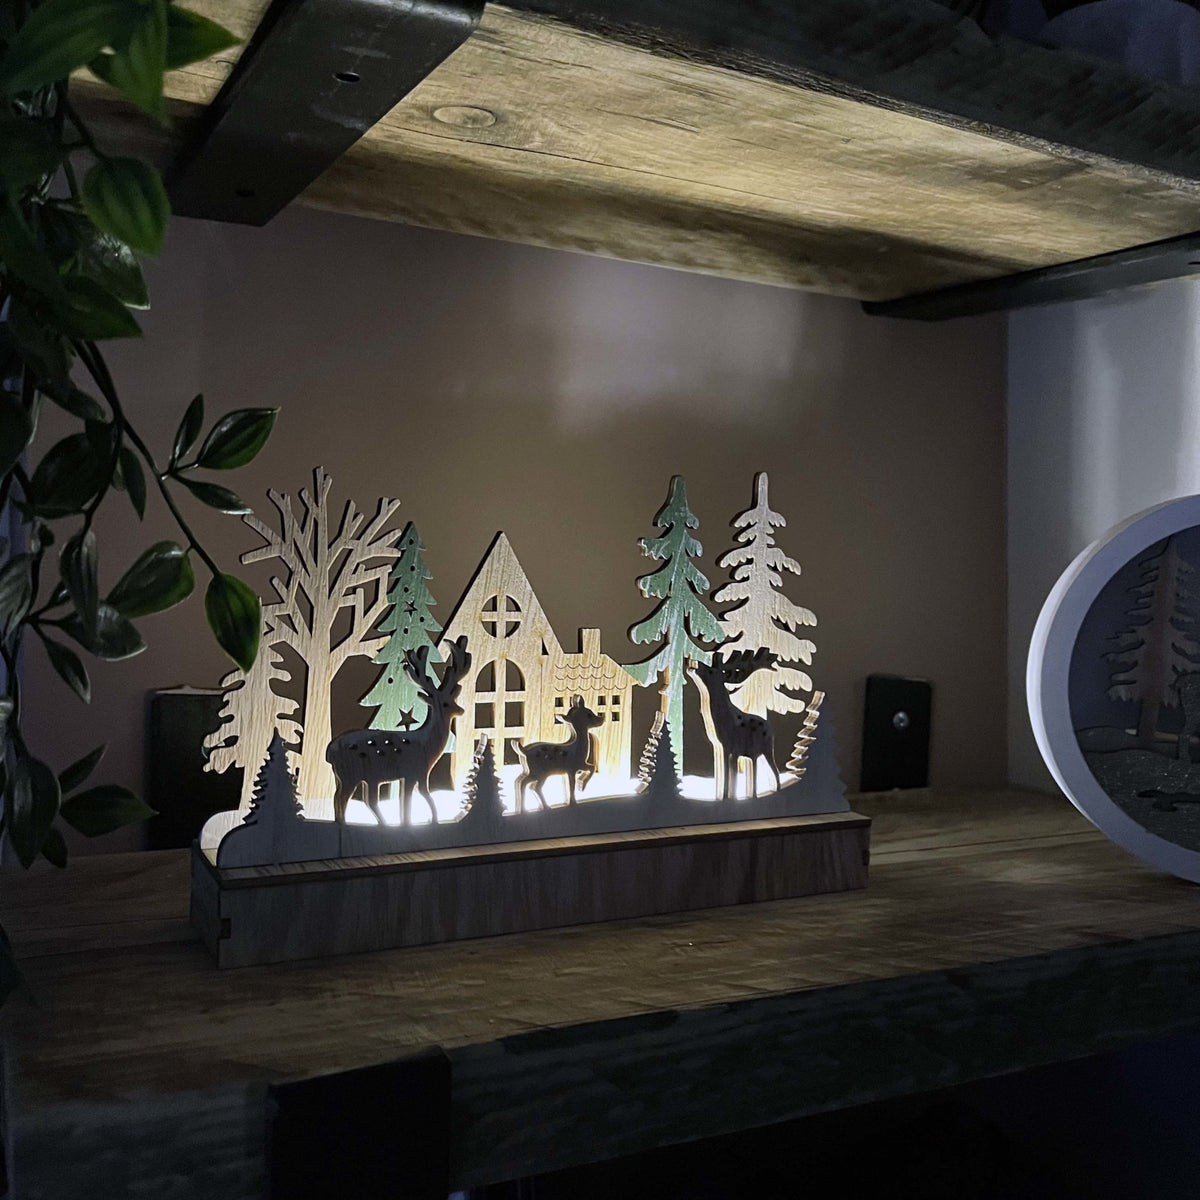 Reindeer & Trees LED Scene Decoration lit up on kitchen shelving